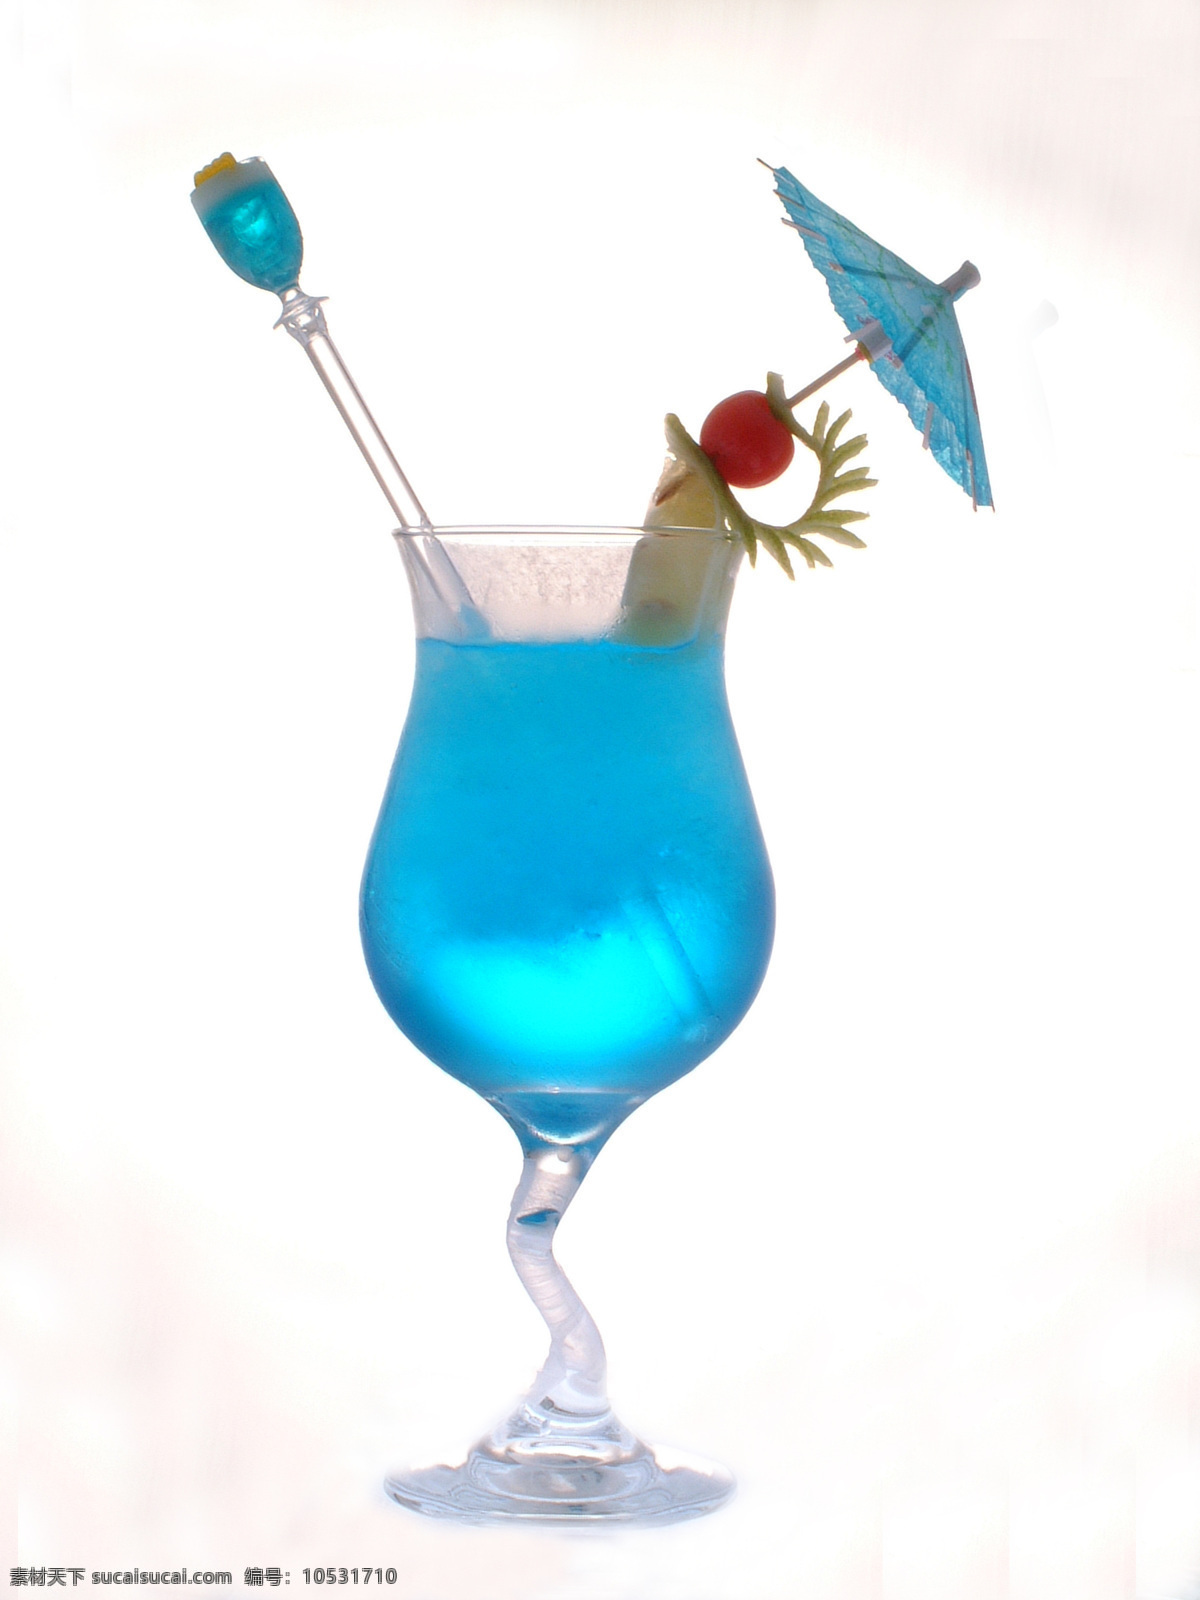 蓝色夏威夷 blue hawaii 鸡尾酒 酒水 洋酒 吧台文化 饮料酒水 餐饮美食